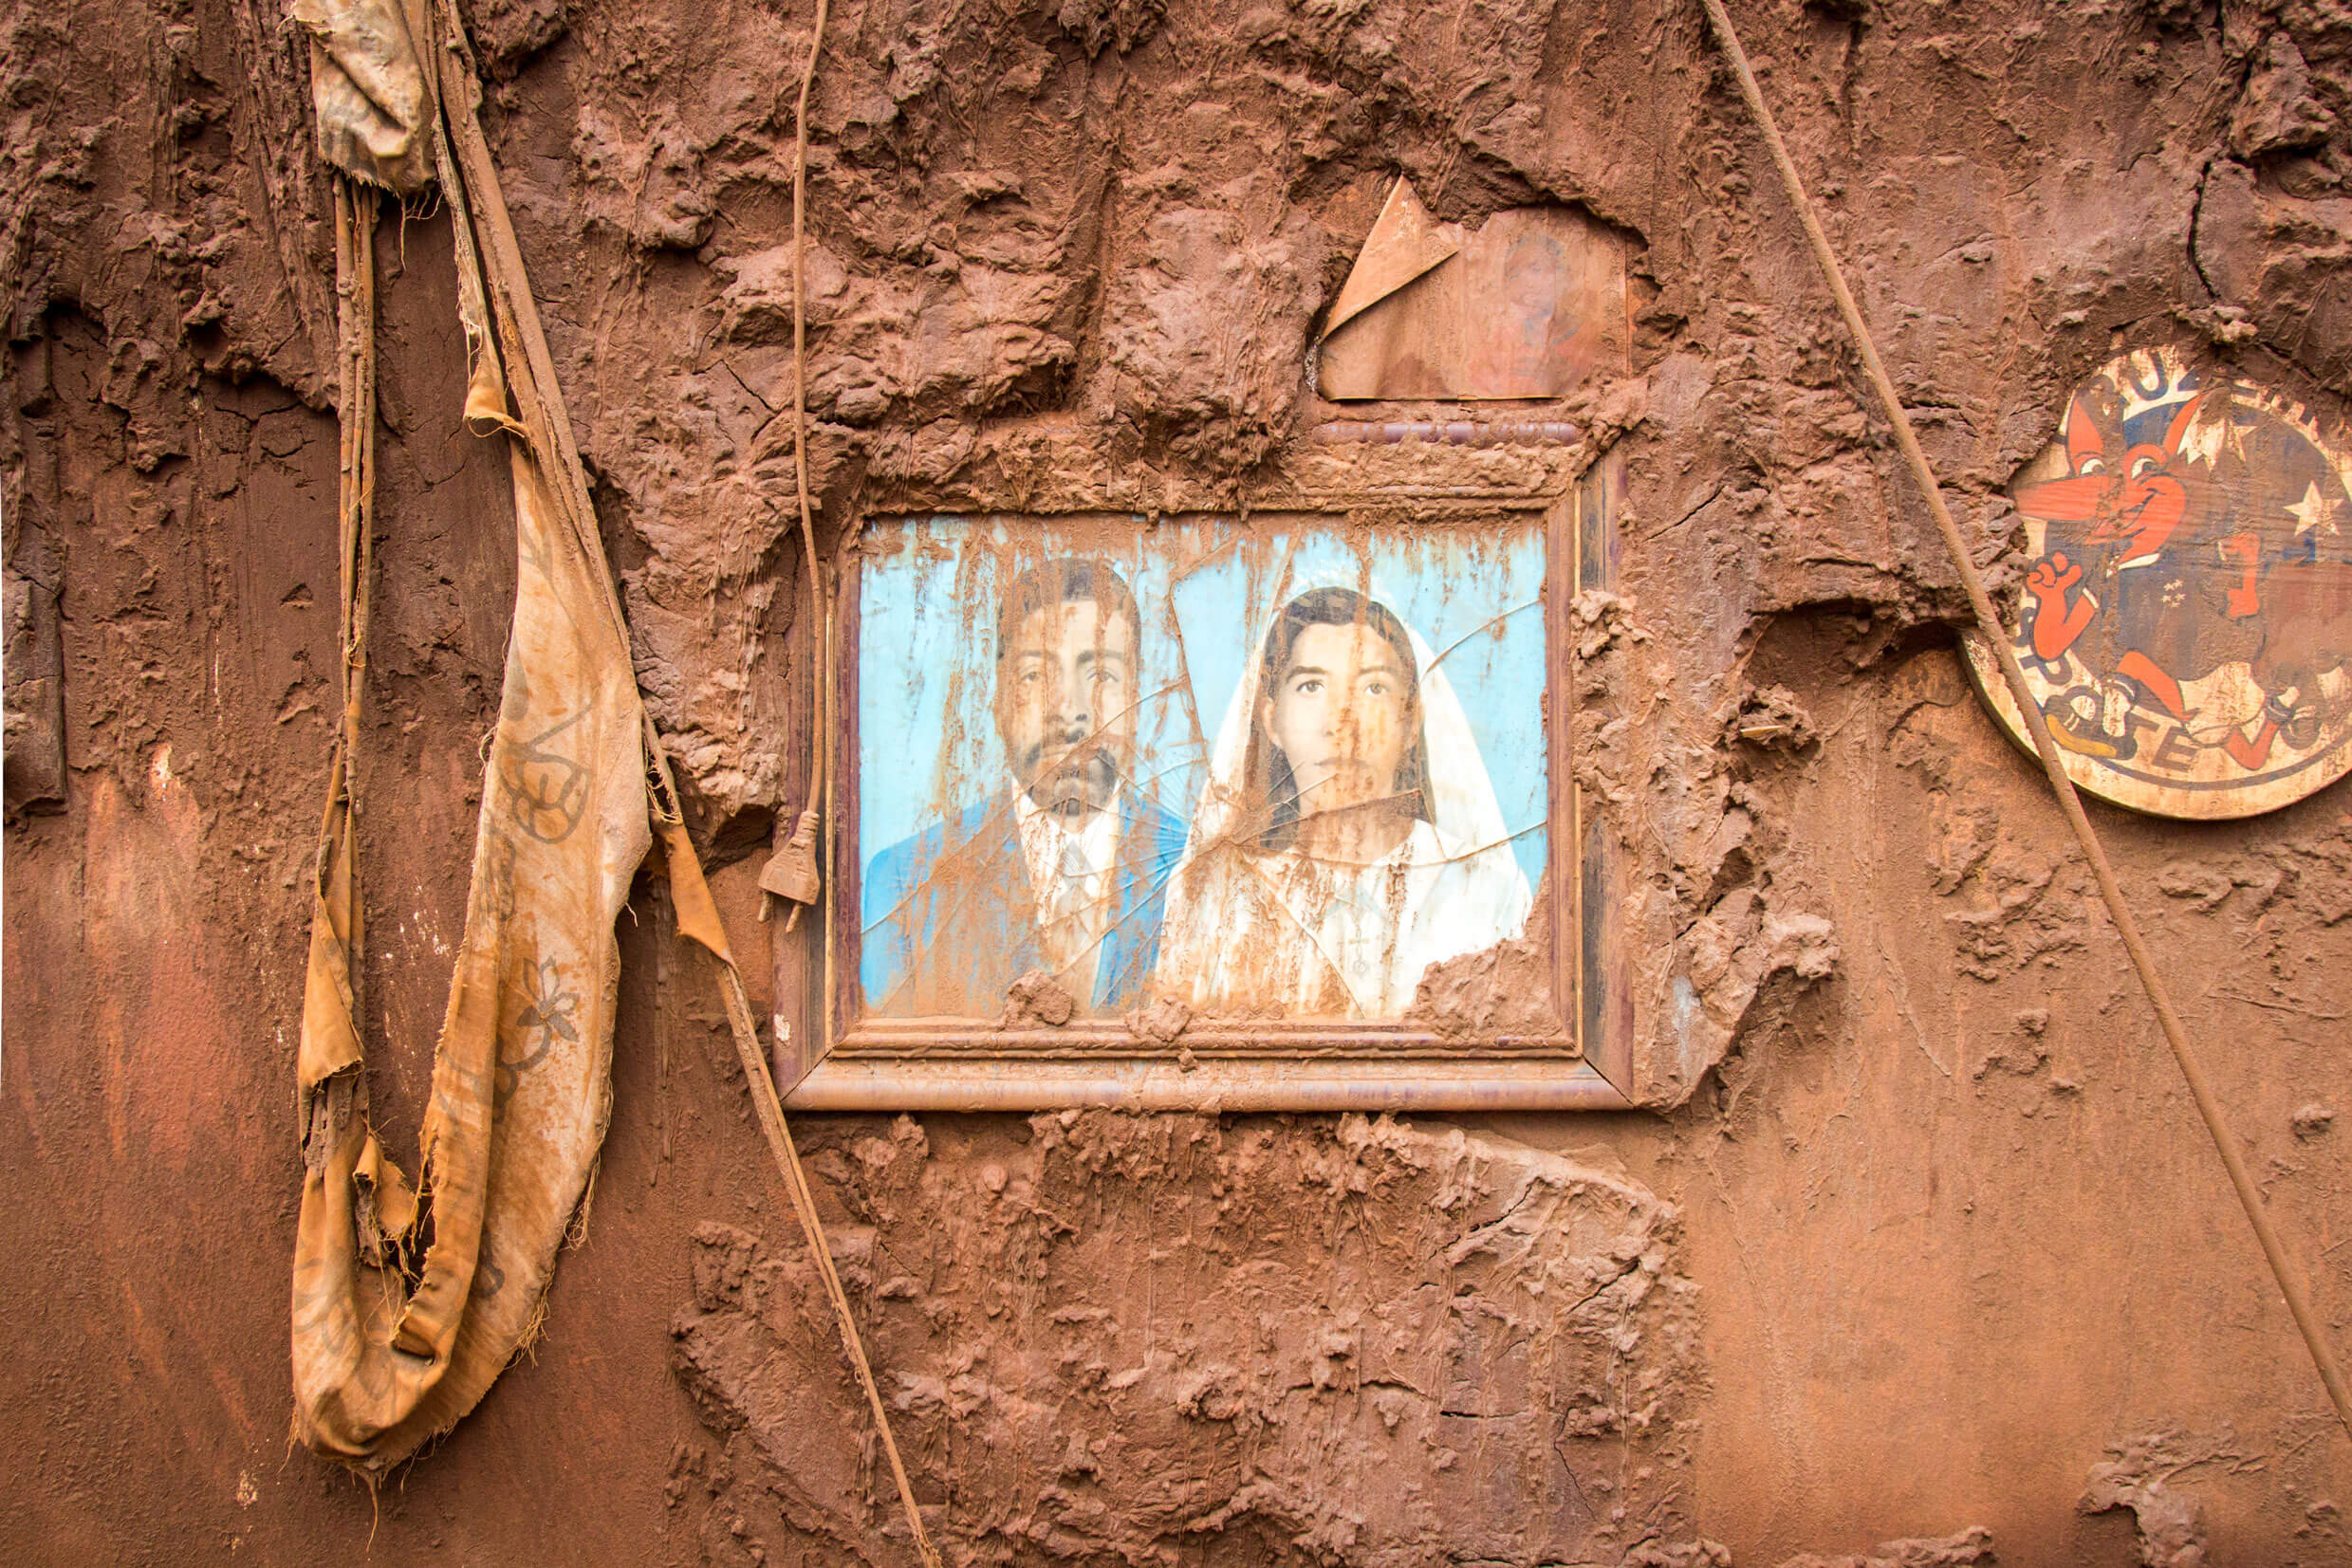 Imagem do quadro de um casal tomado pela lama. Créditos: Romerito Pontes